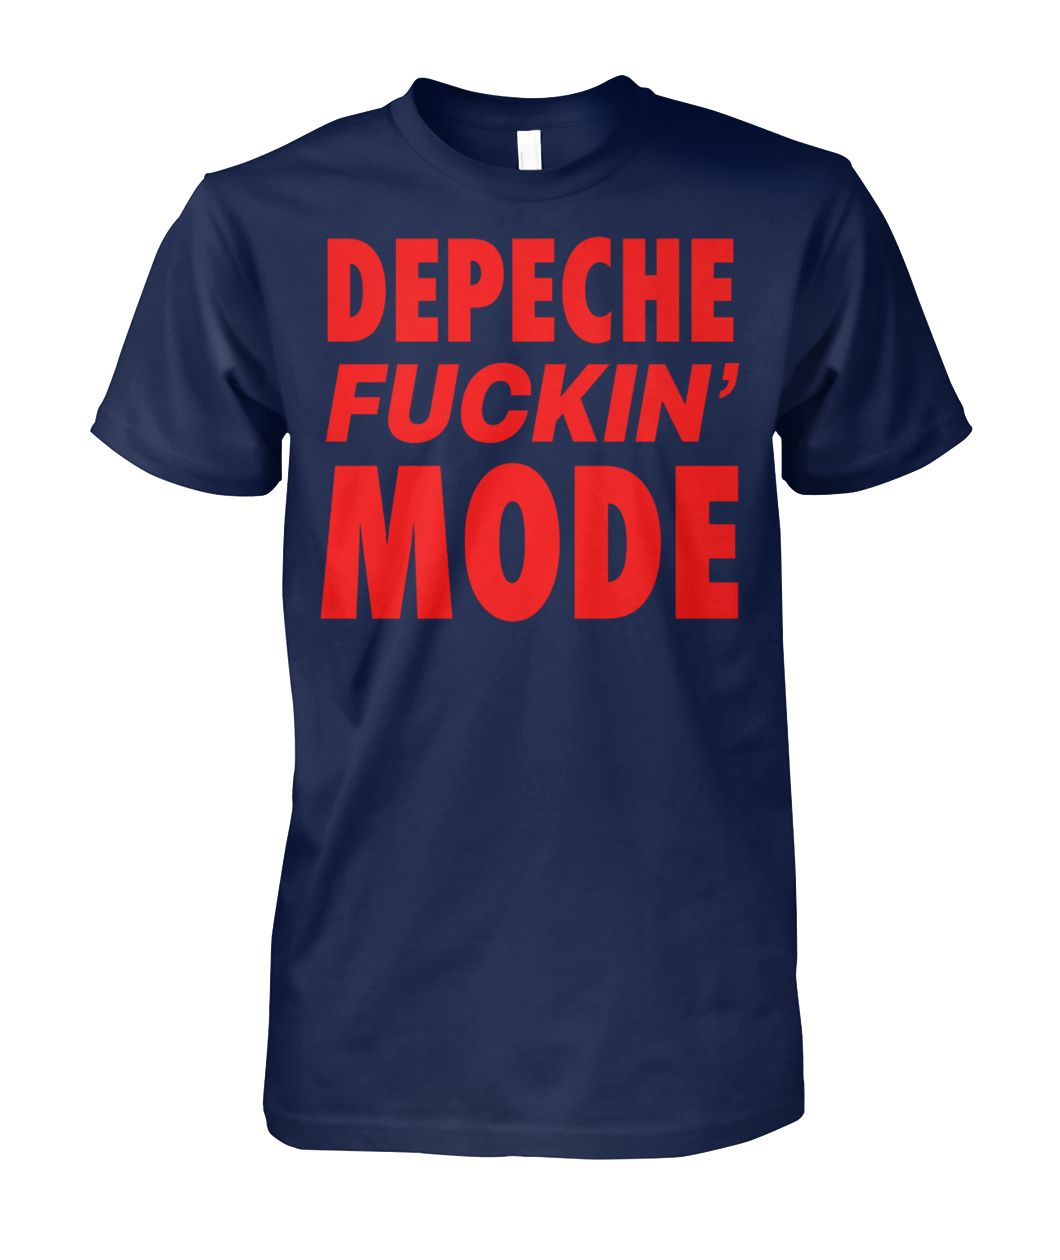 Depeche fuckin’ mode shirt